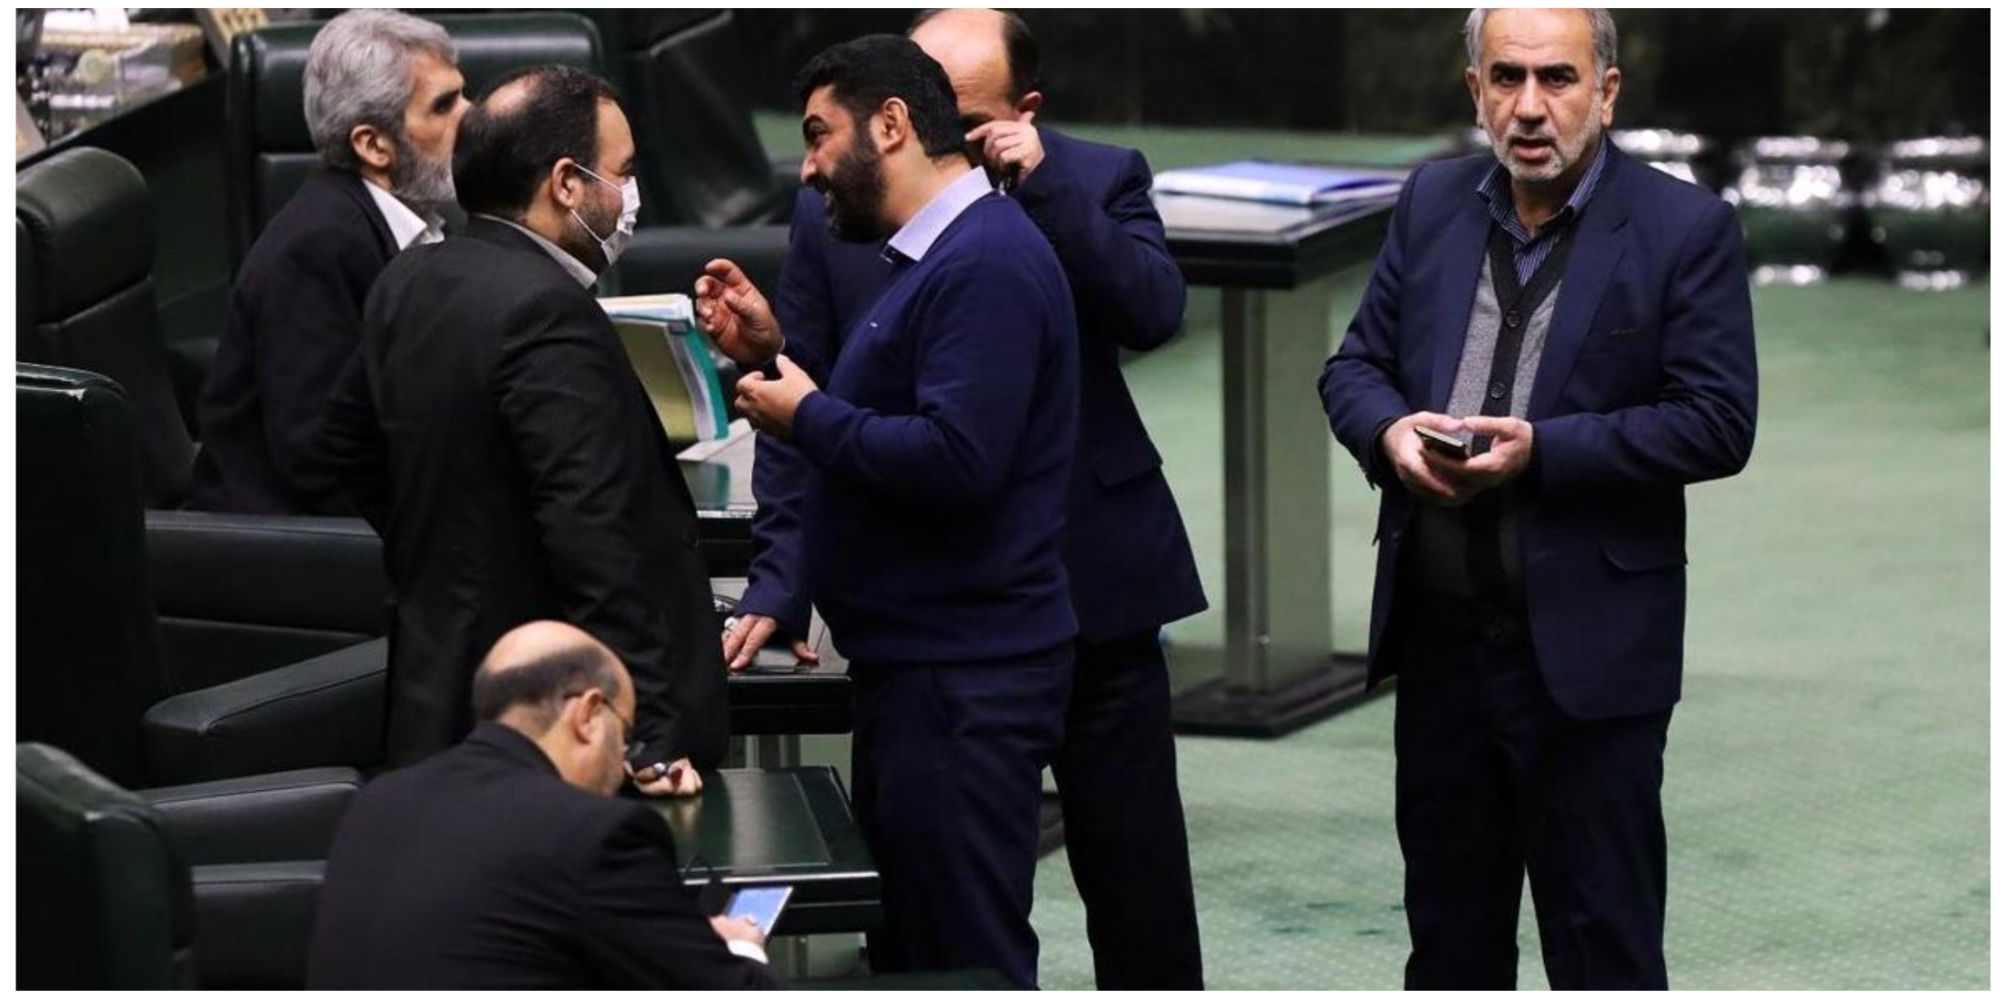 انتقاد صریح جمهوری اسلامی از نمایندگان مجلس: به جای اضافه کردن تعطیلات کشور دنبال راهکاری برای خروج از بحران اقتصادی باشید!